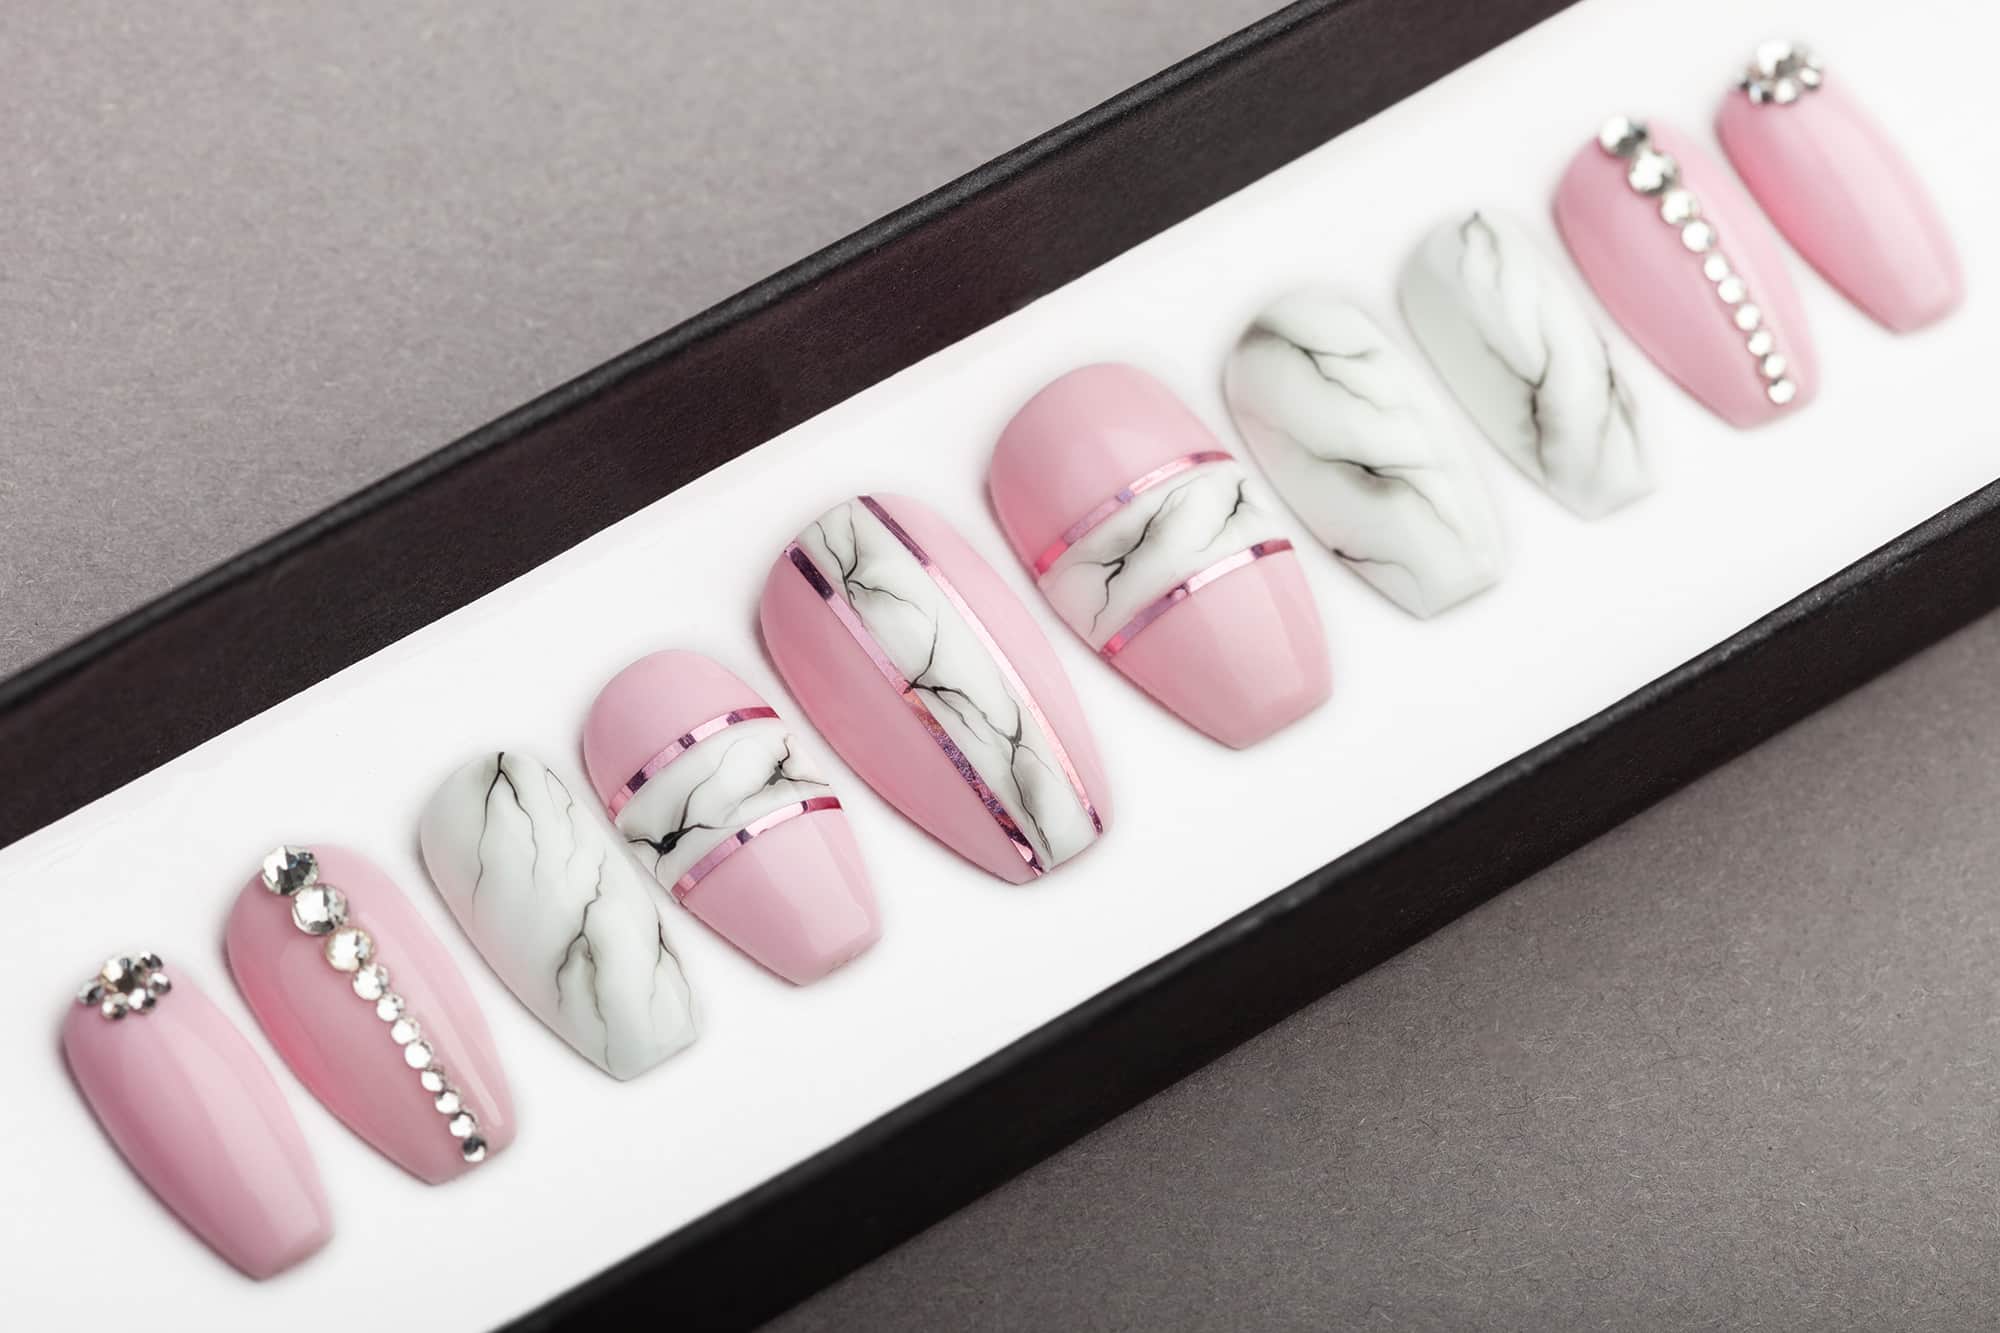 Pink Nails Quartz Nails Pink Marble Press on Nails Fake Nails Set of 20 Glue on Nails Instagram Nails Custom Nails